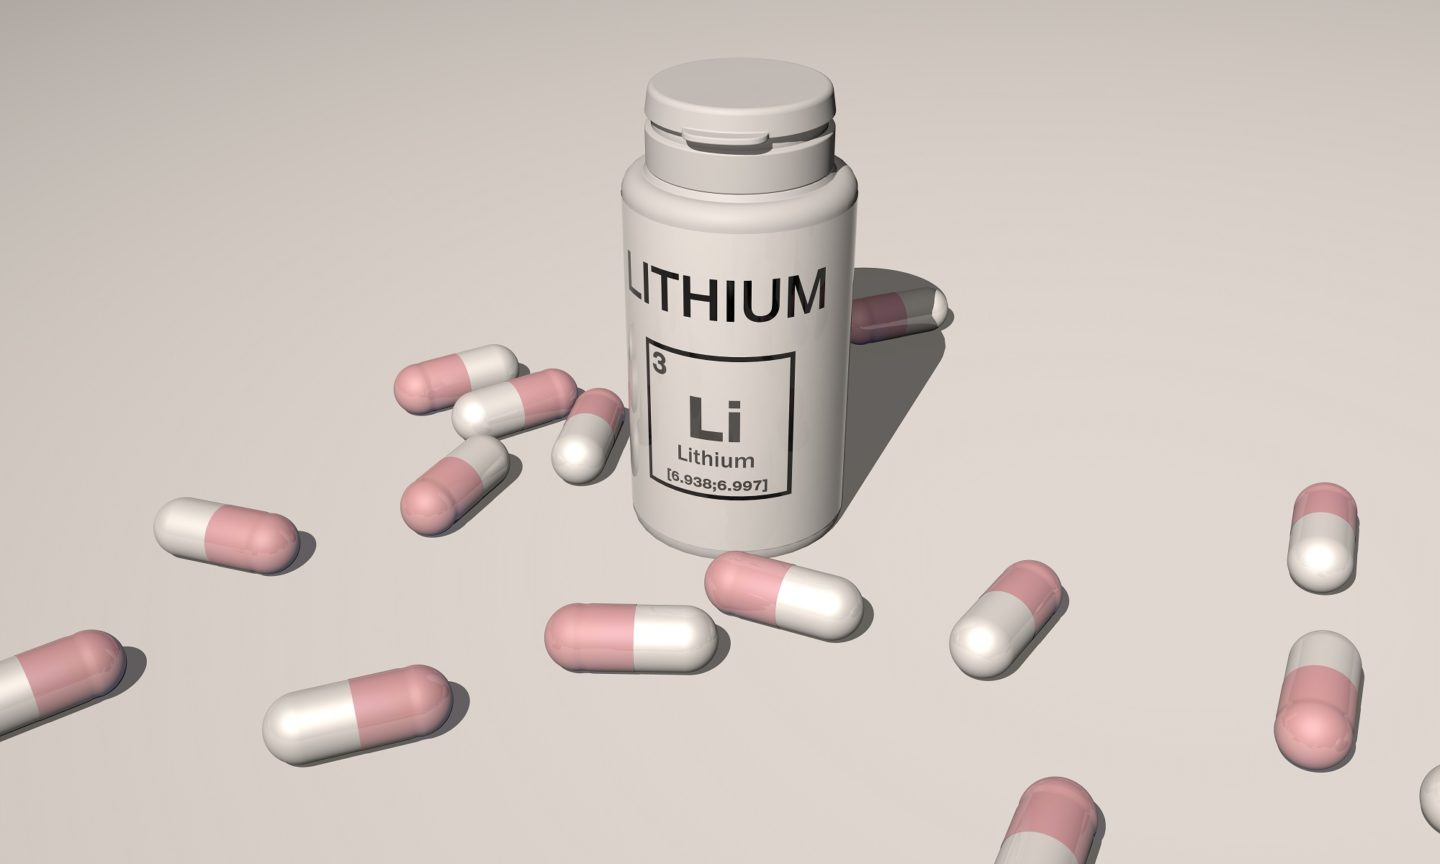 دواء الليثيوم: إرشادات الاستخدام والتحذيرات